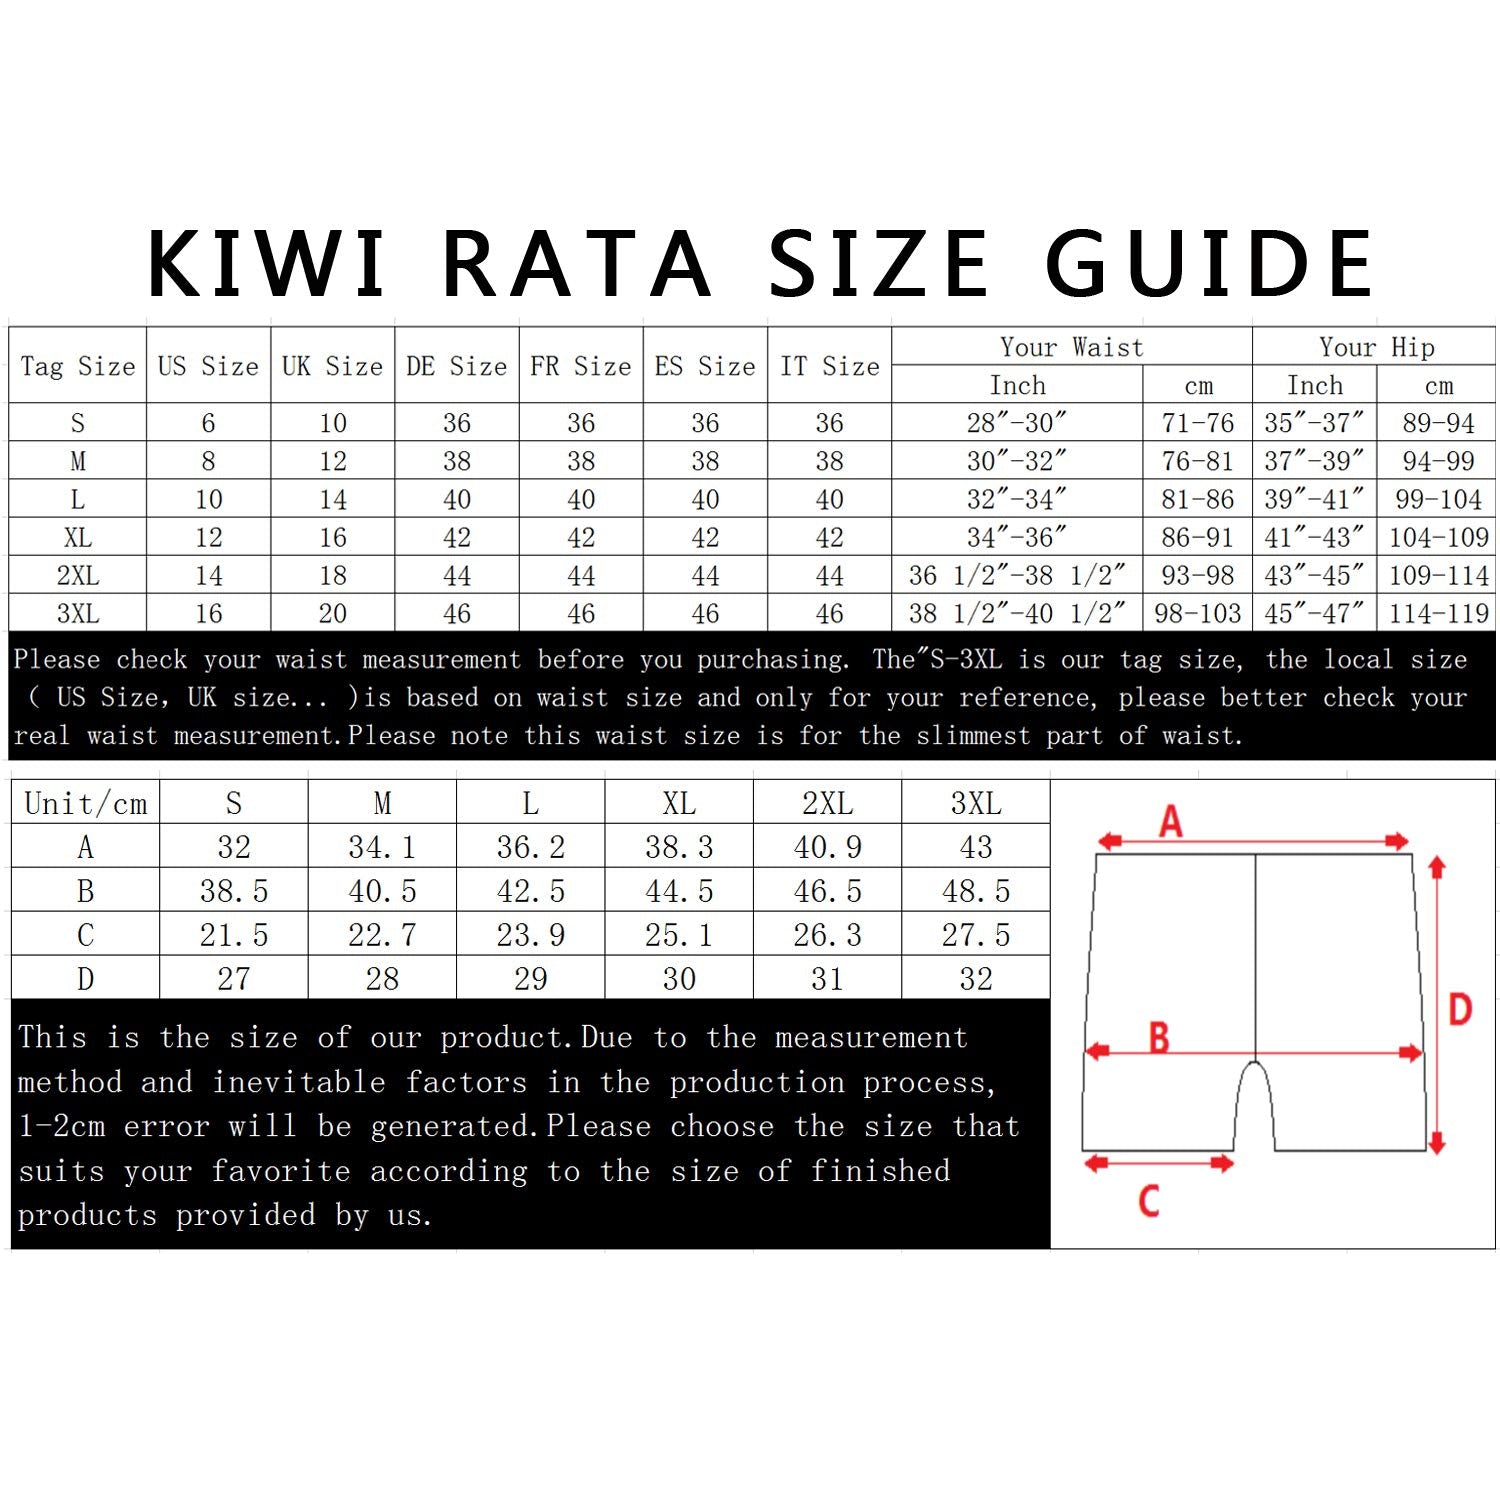 Kiwi Rata